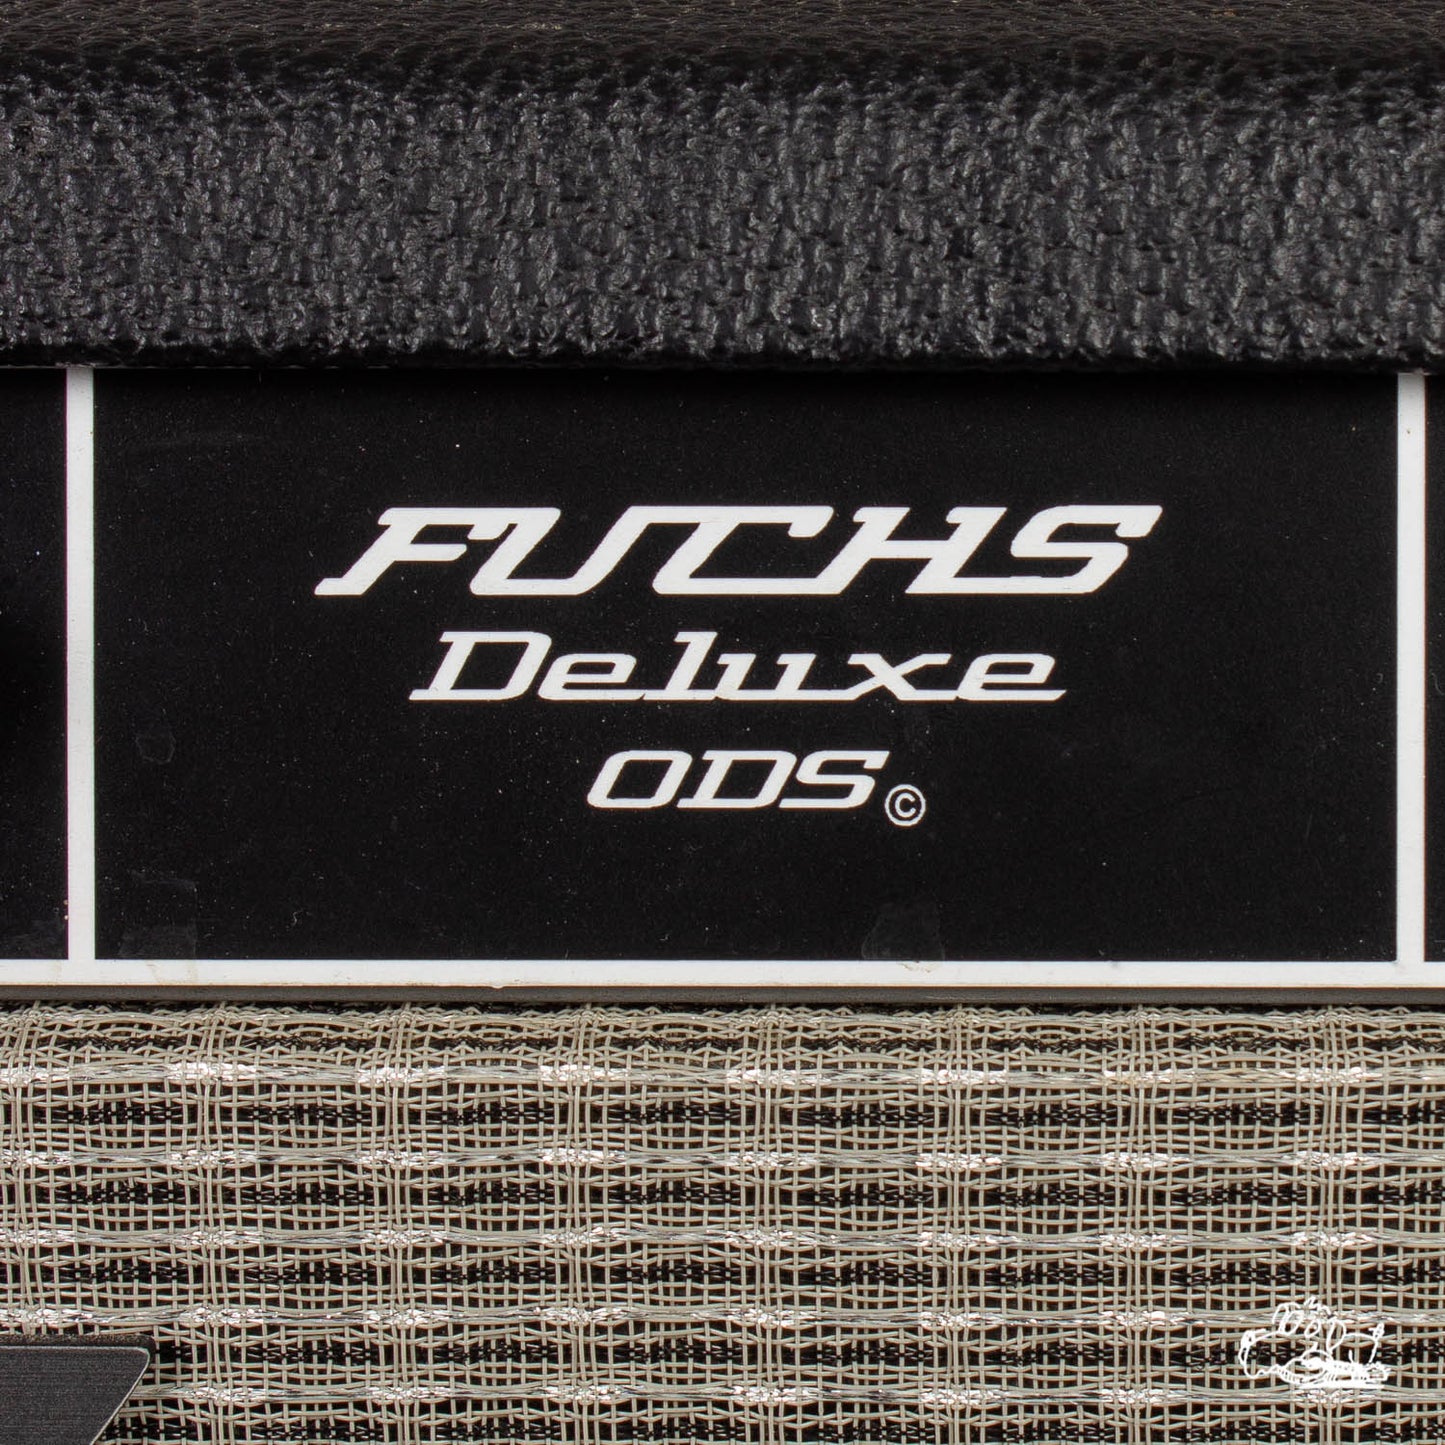 2010 Fuchs Overdrive Supreme - Modded Fender Deluxe Reverb